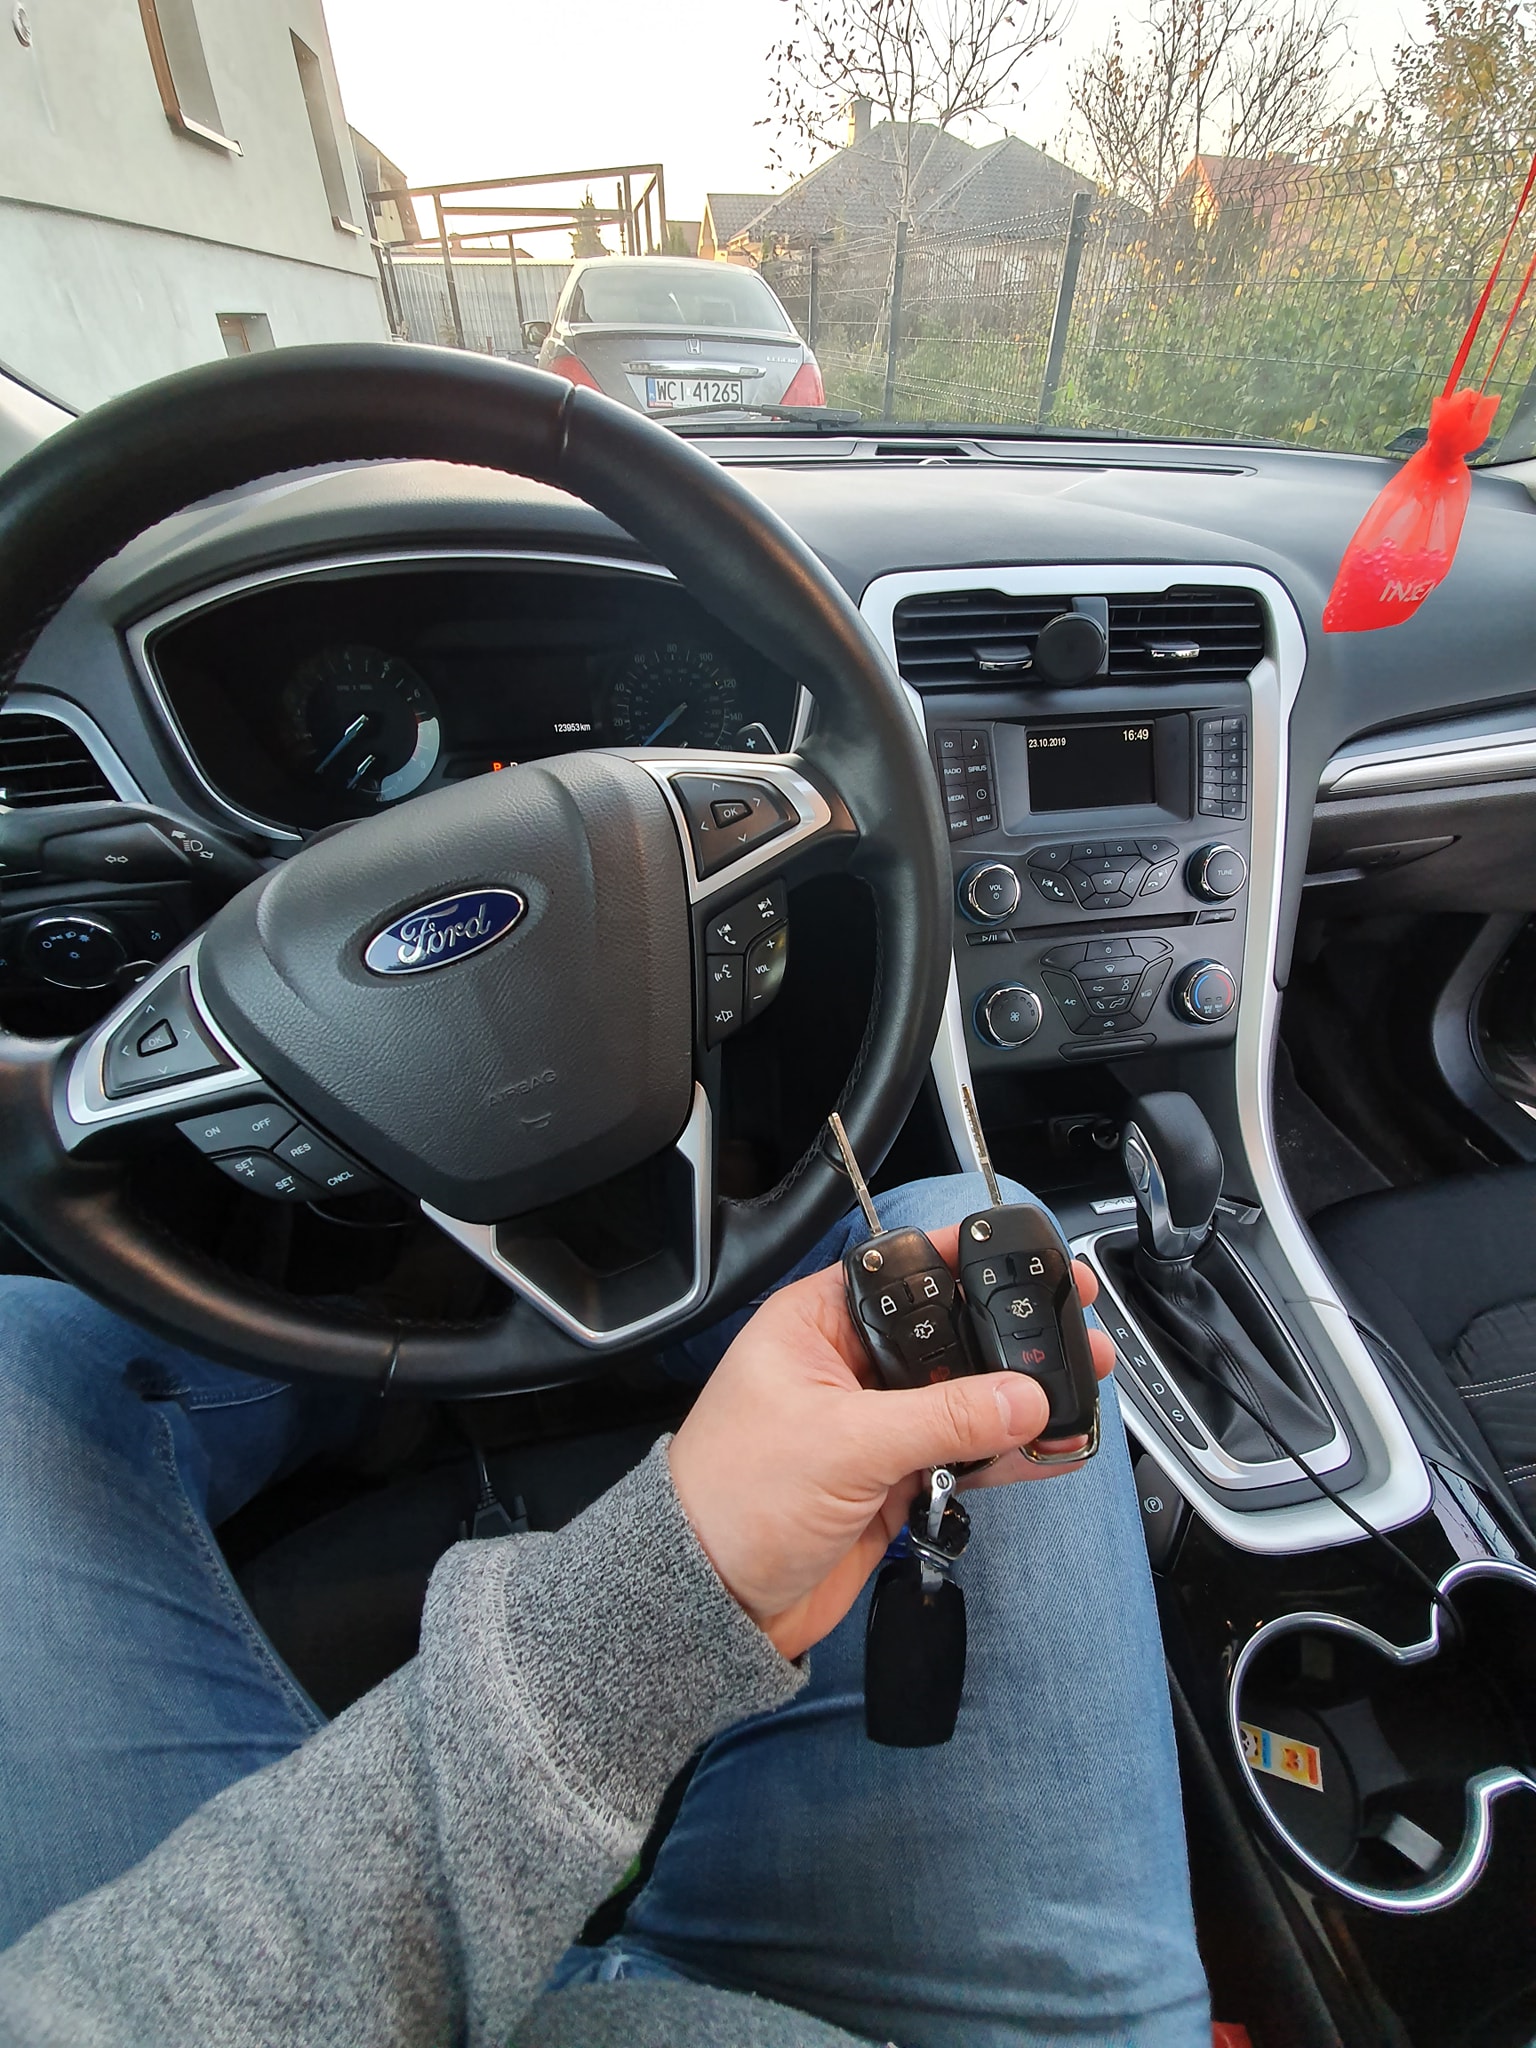 Ford Fusion 2015 dorobienie klucza z pilotem.